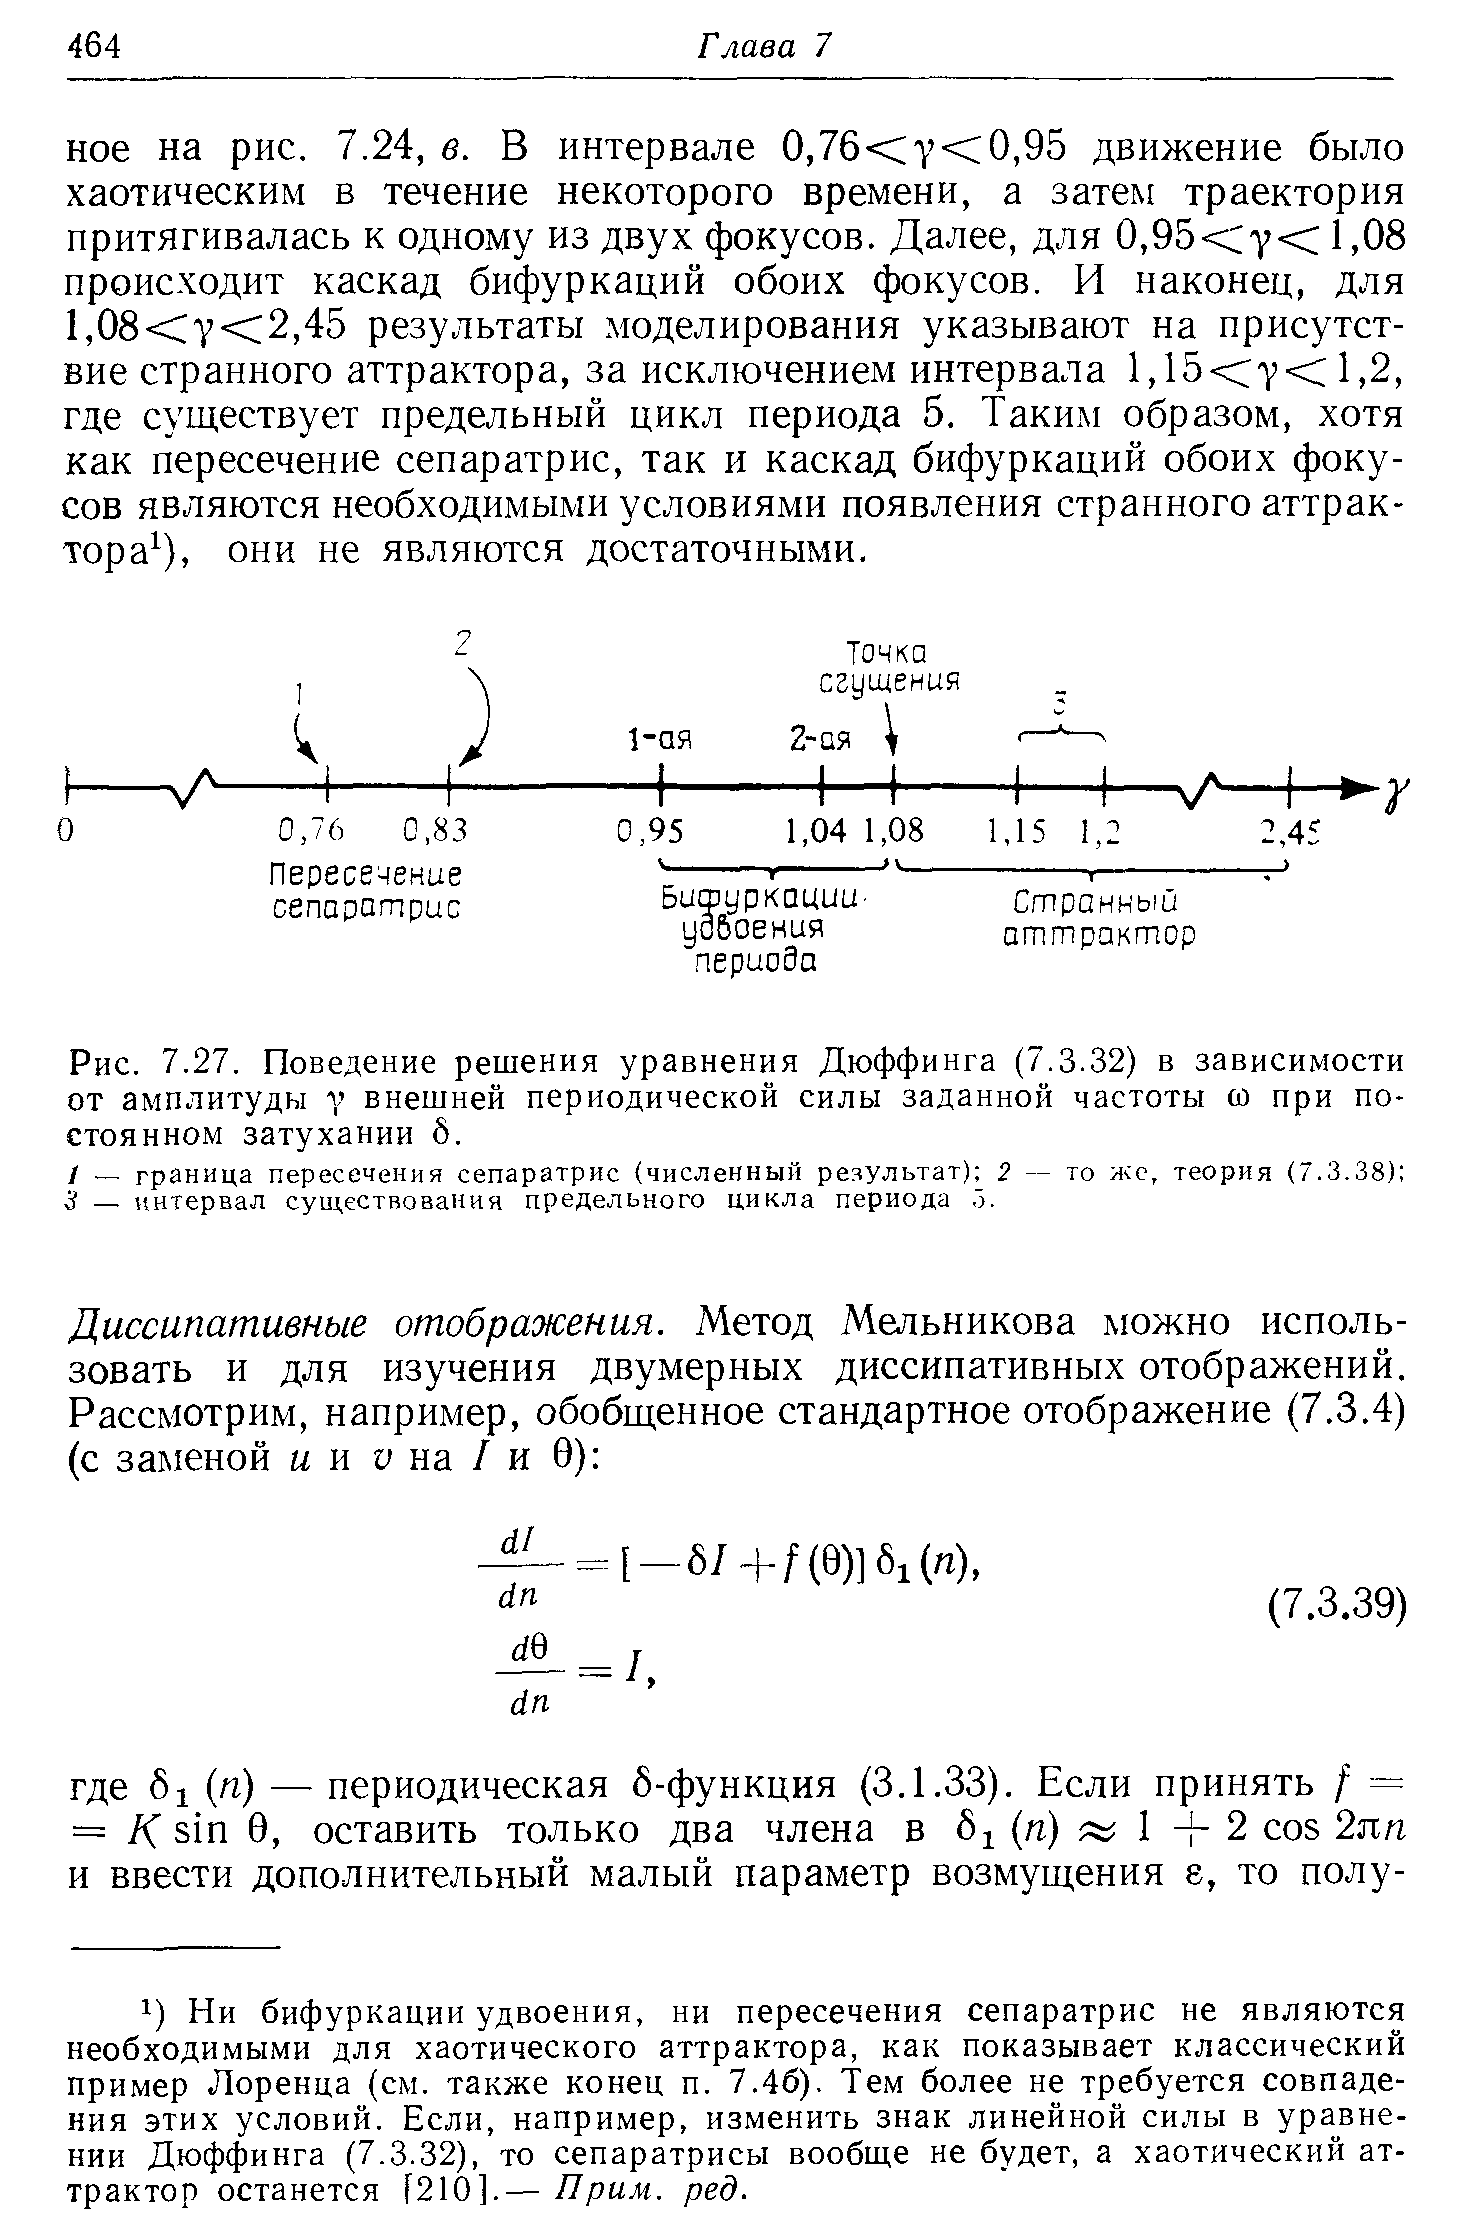 Рис. 7.27. Поведение решения уравнения Дюффинга (7.3.32) в зависимости от амплитуды V внешней периодической силы заданной частоты (О при постоянном затухании 5.
